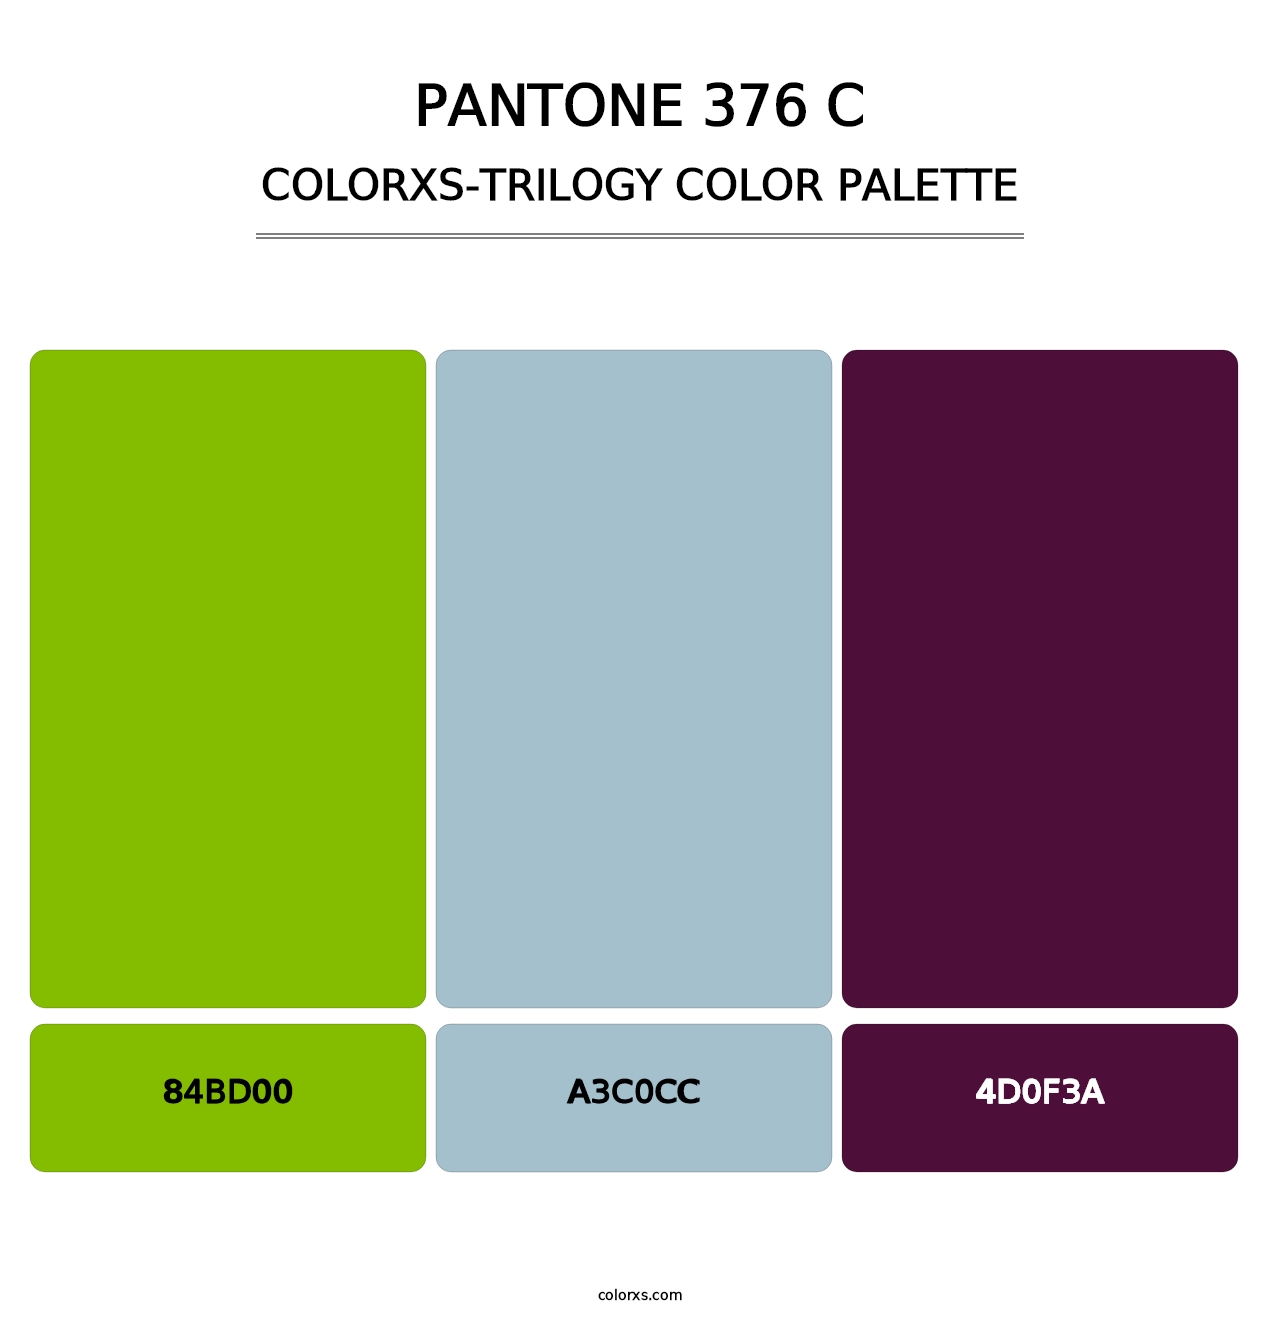 PANTONE 376 C - Colorxs Trilogy Palette